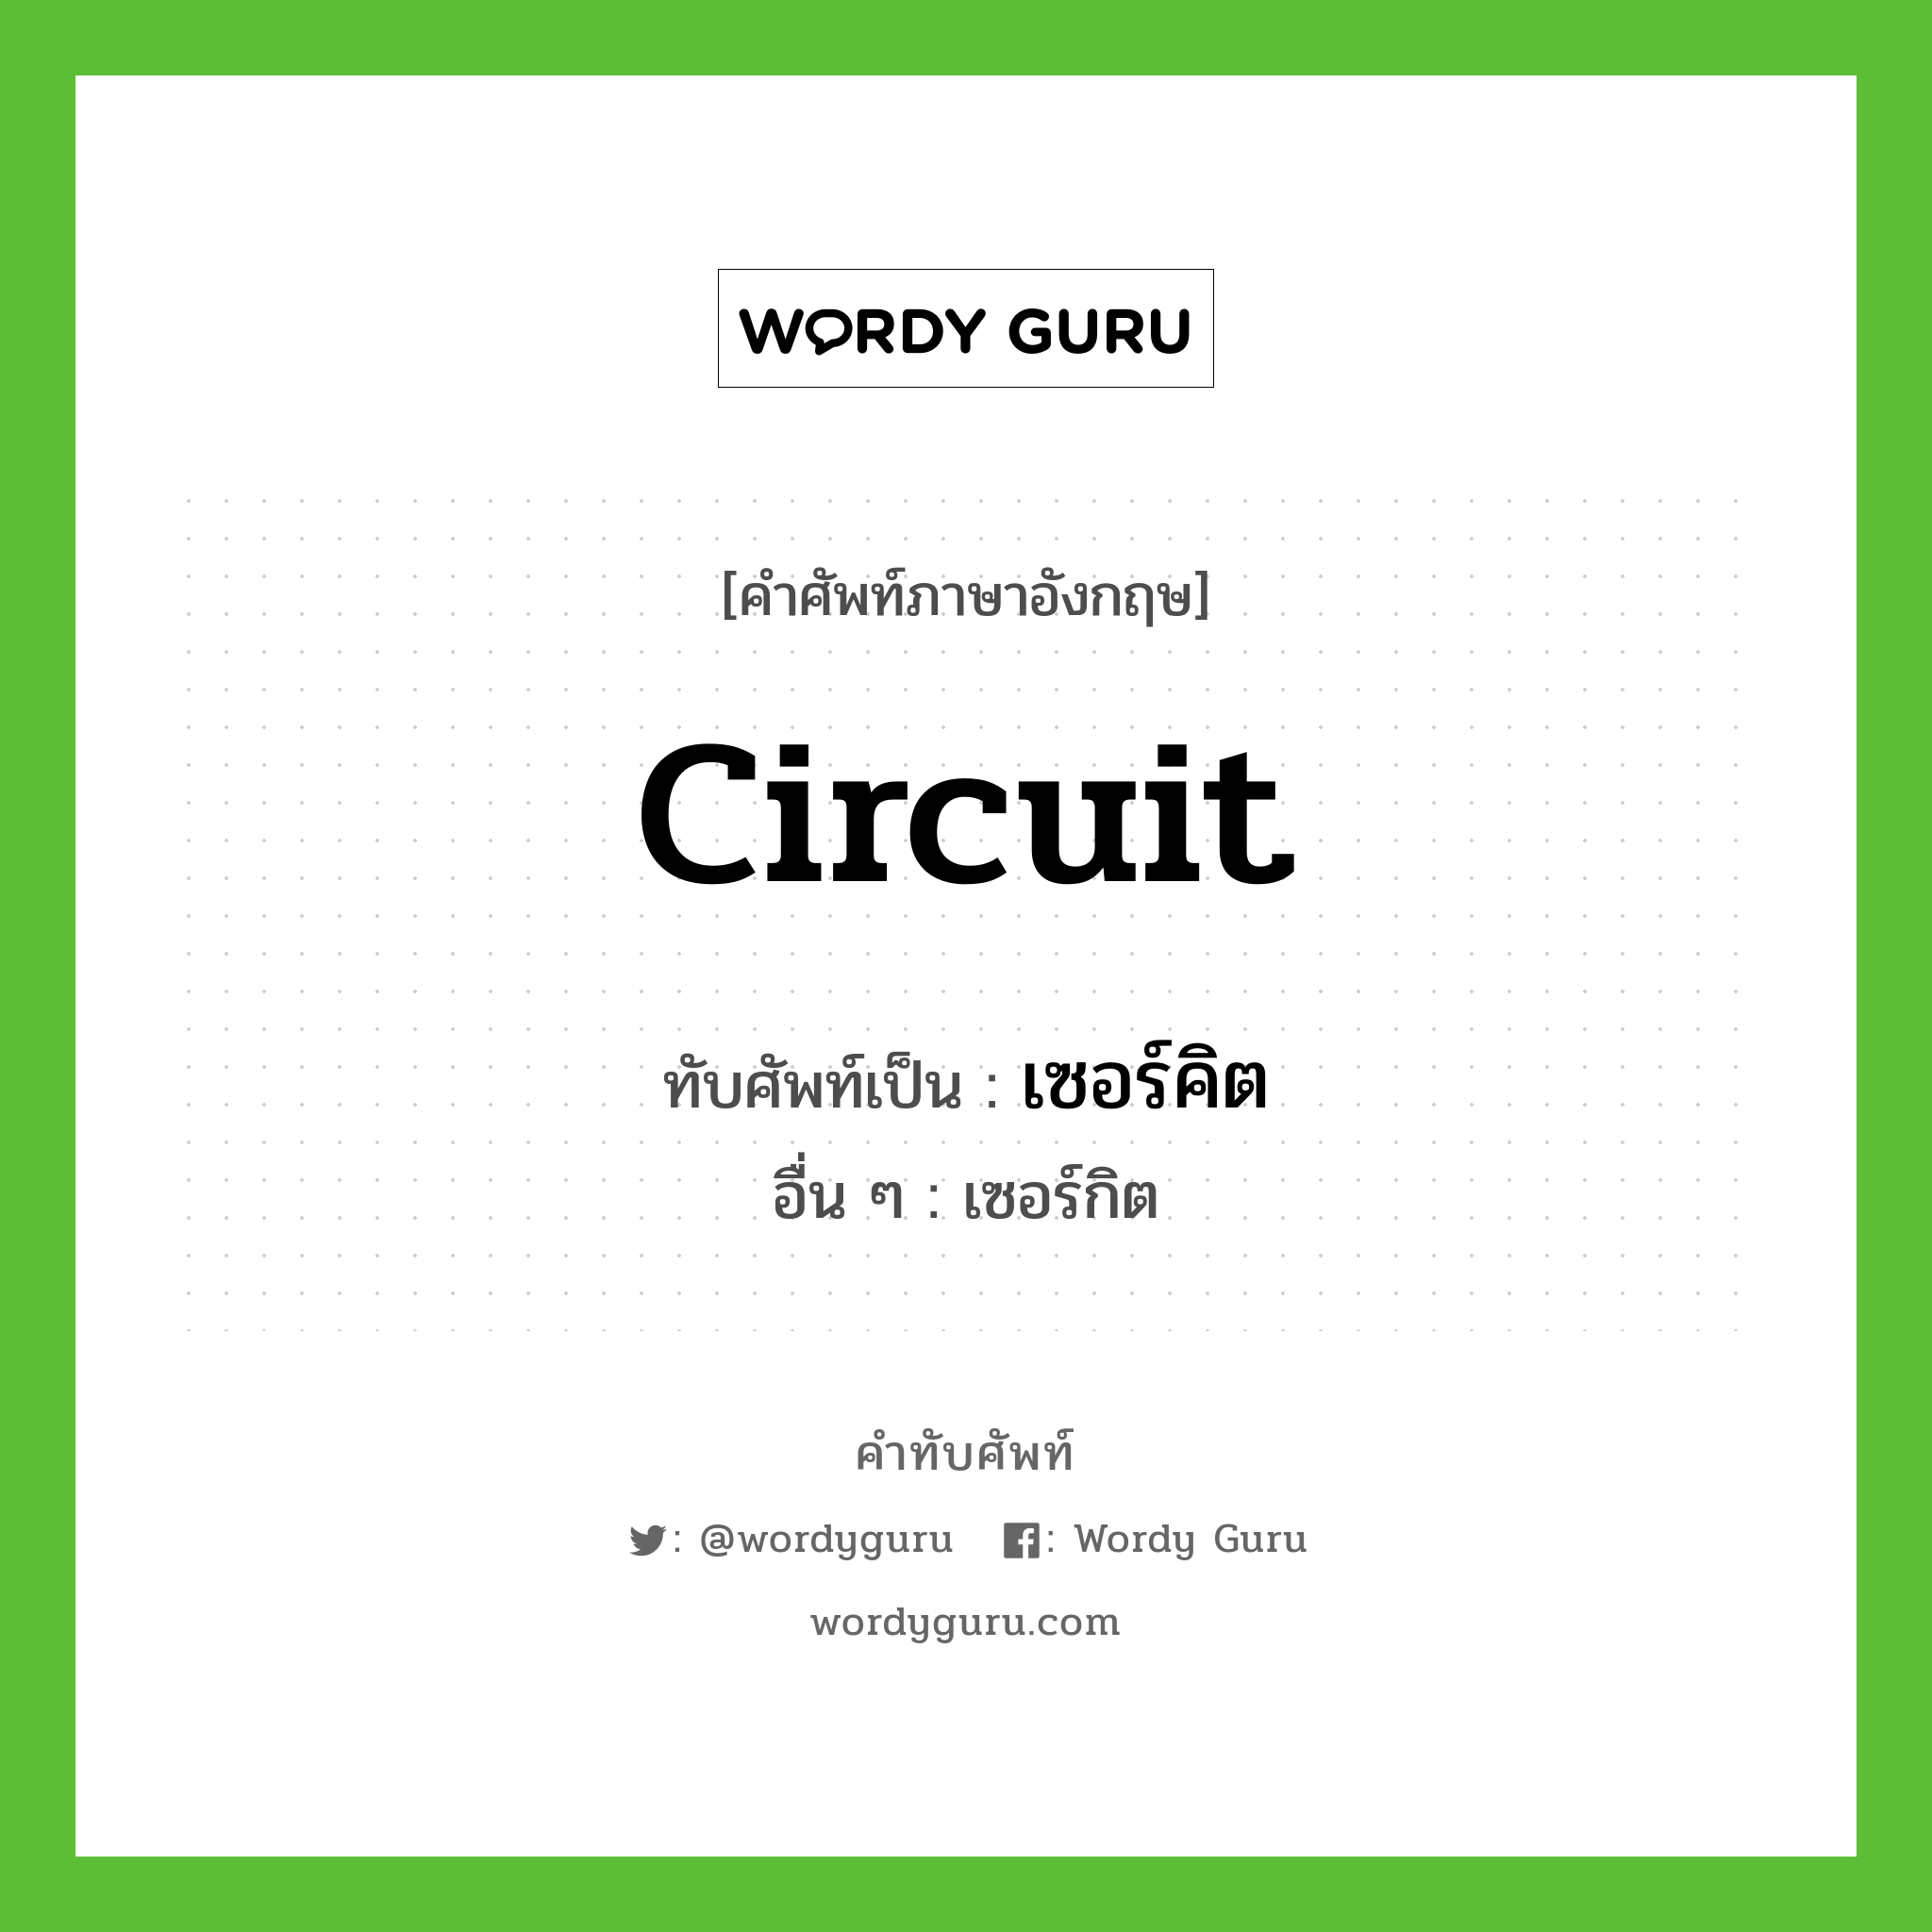 circuit เขียนเป็นคำไทยว่าอะไร?, คำศัพท์ภาษาอังกฤษ circuit ทับศัพท์เป็น เซอร์คิต อื่น ๆ เซอร์กิต